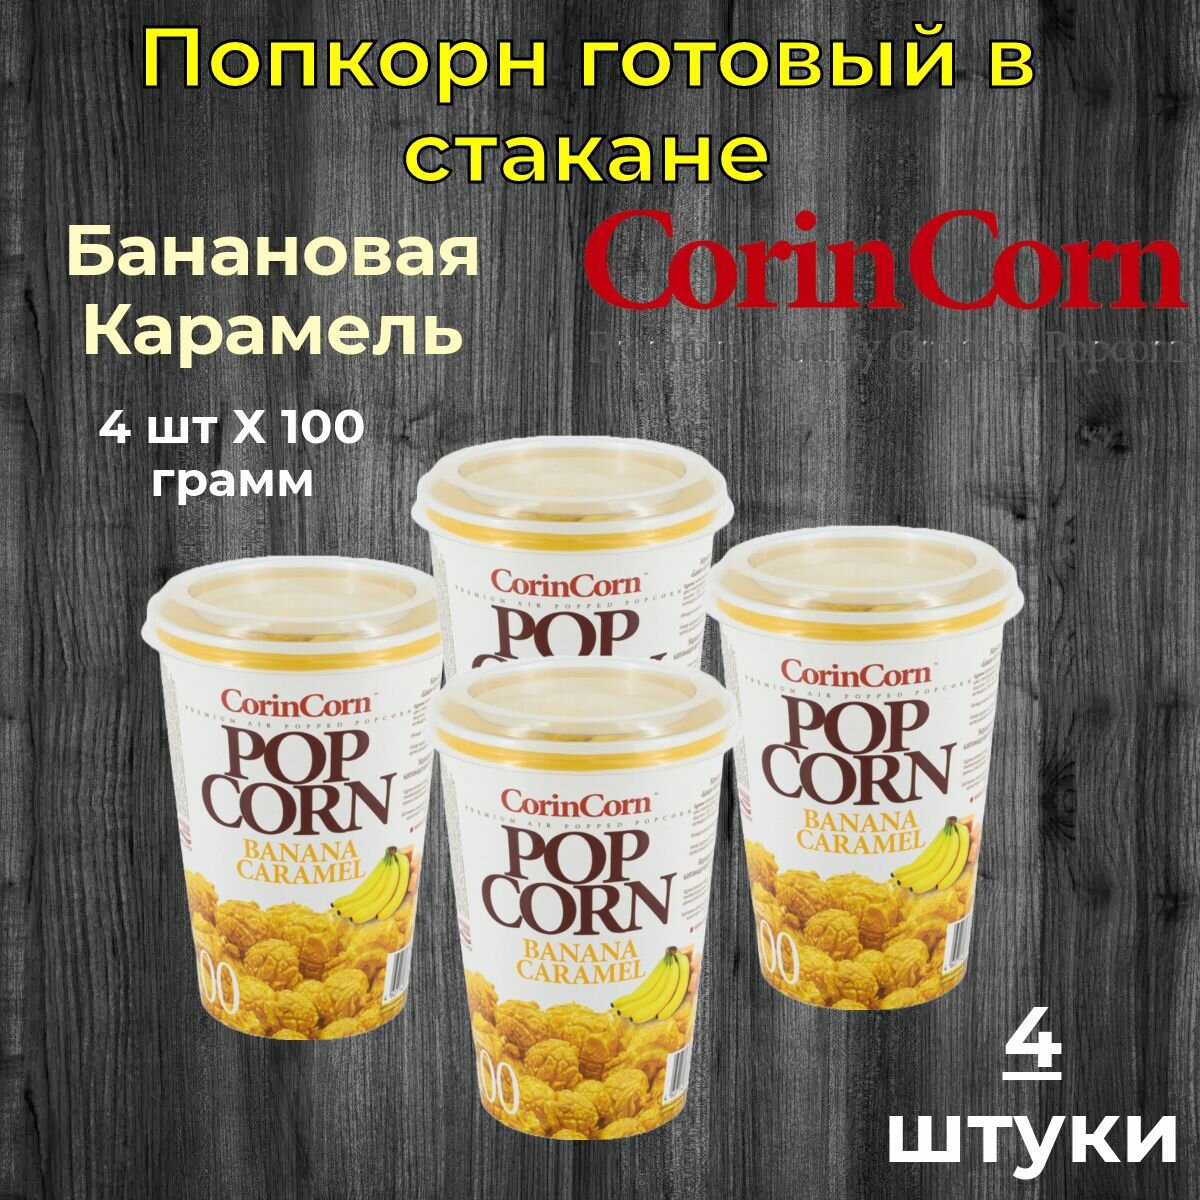 CorinCorn Готовый попкорн Сладкий банан 4 штуки по 100 грамм